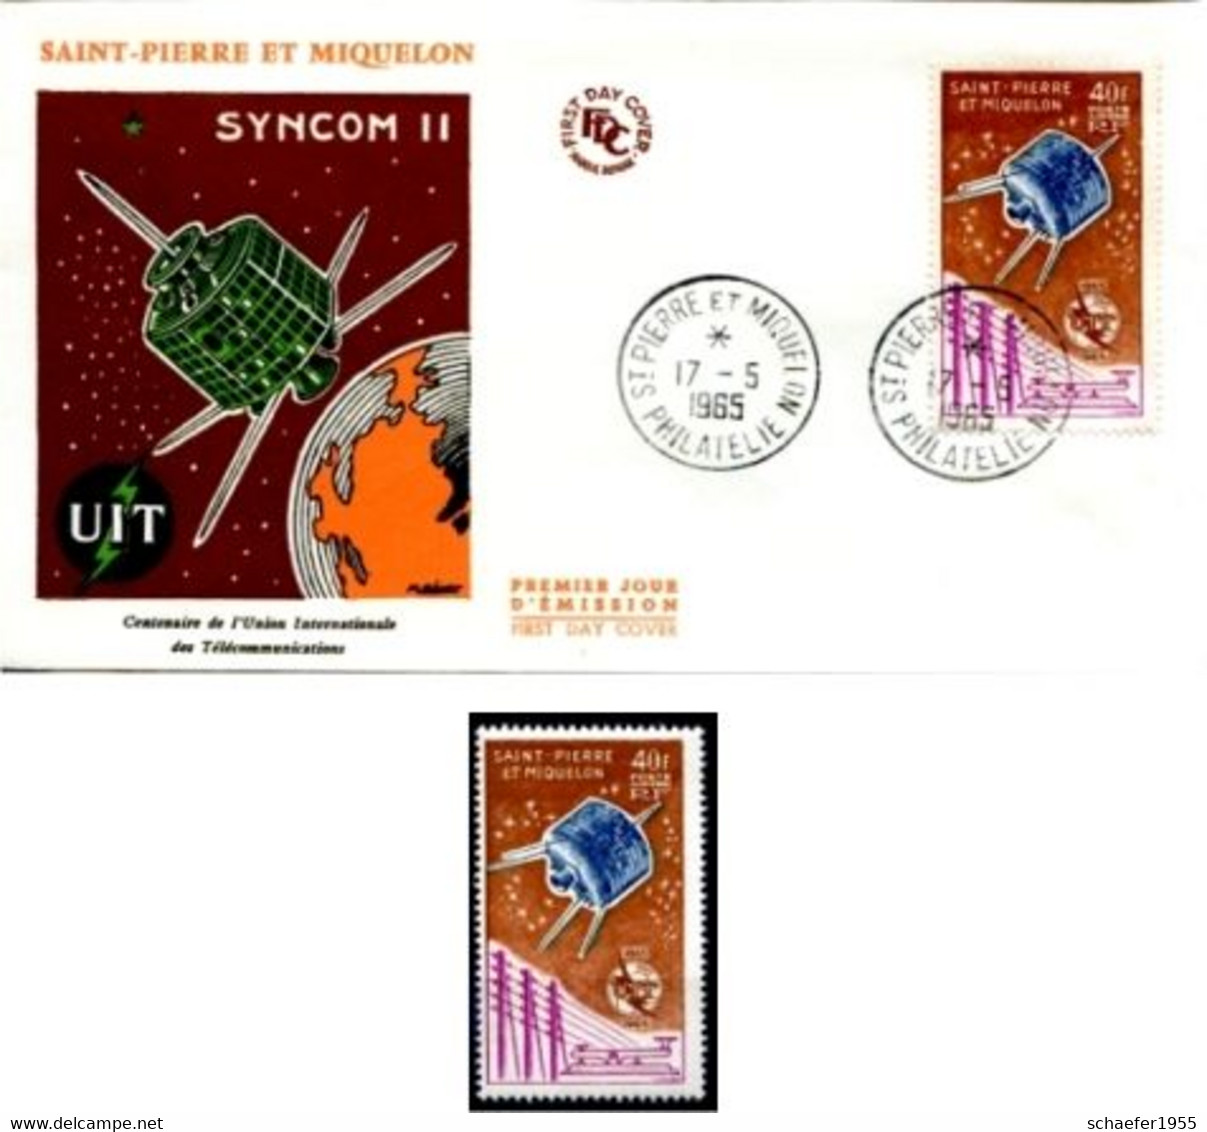 Saint Pierre Et Miquelon 1965 Syncom II FDC + Stamp - América Del Norte